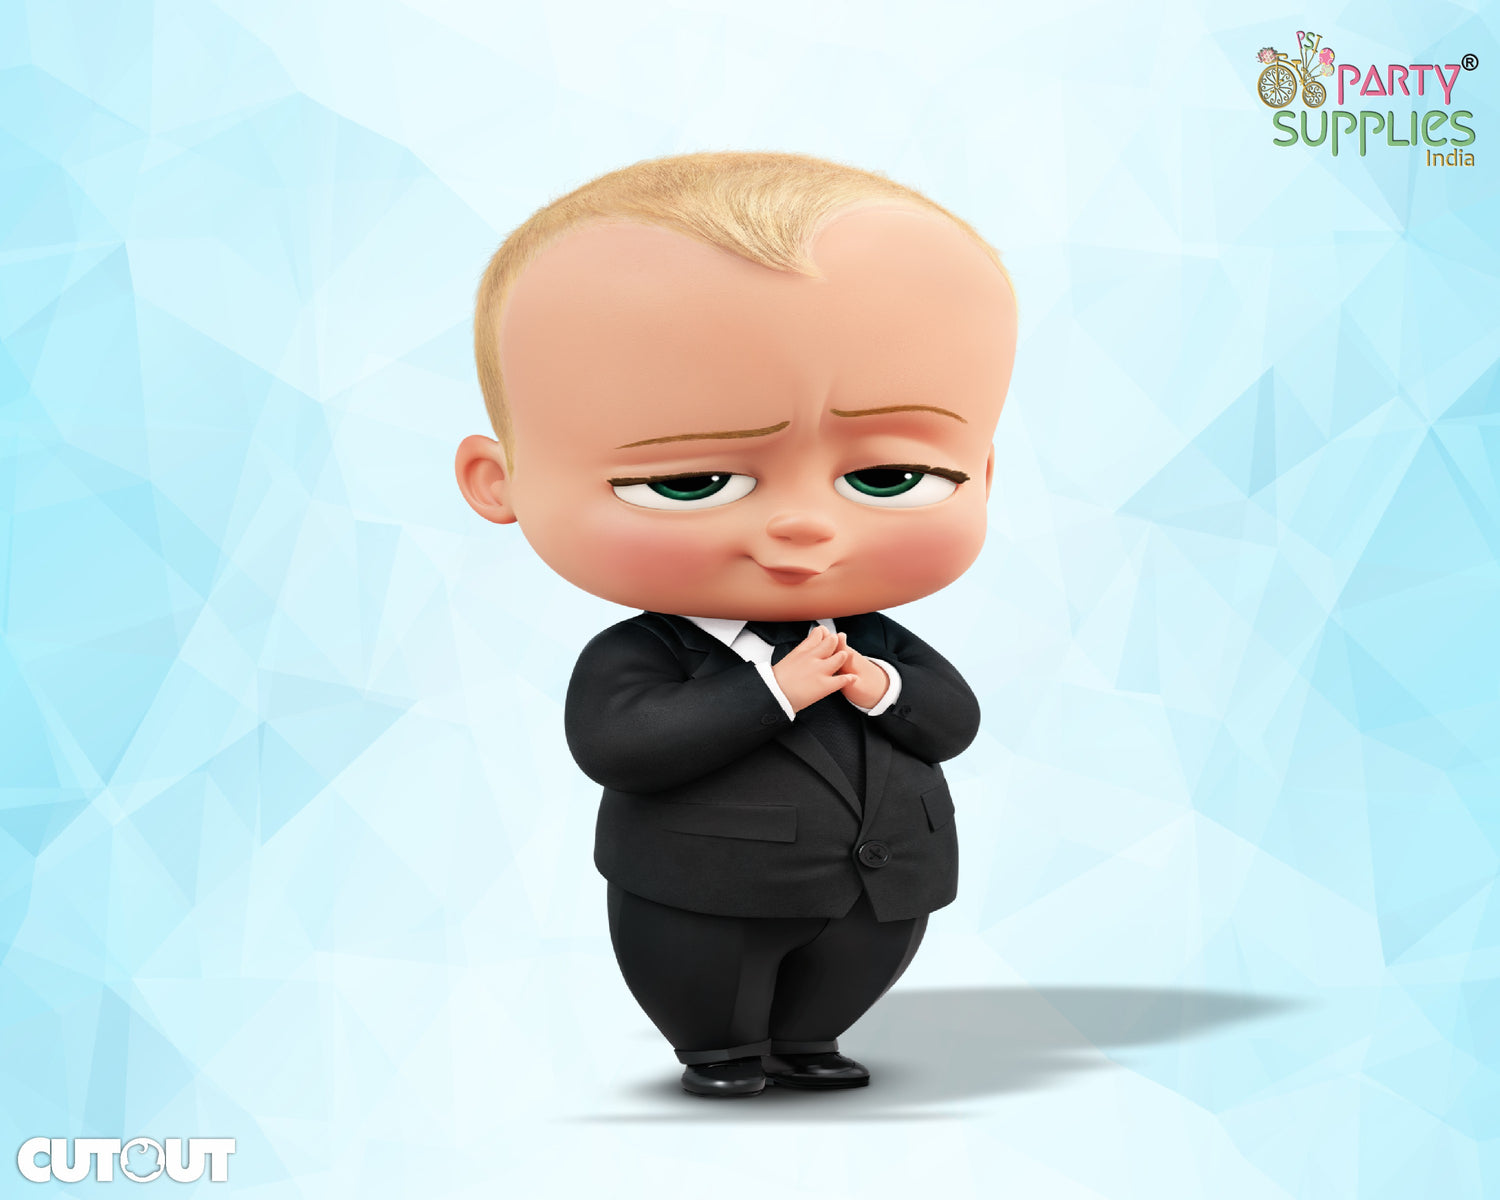 PSI Boss Baby Theme Cutout - 01